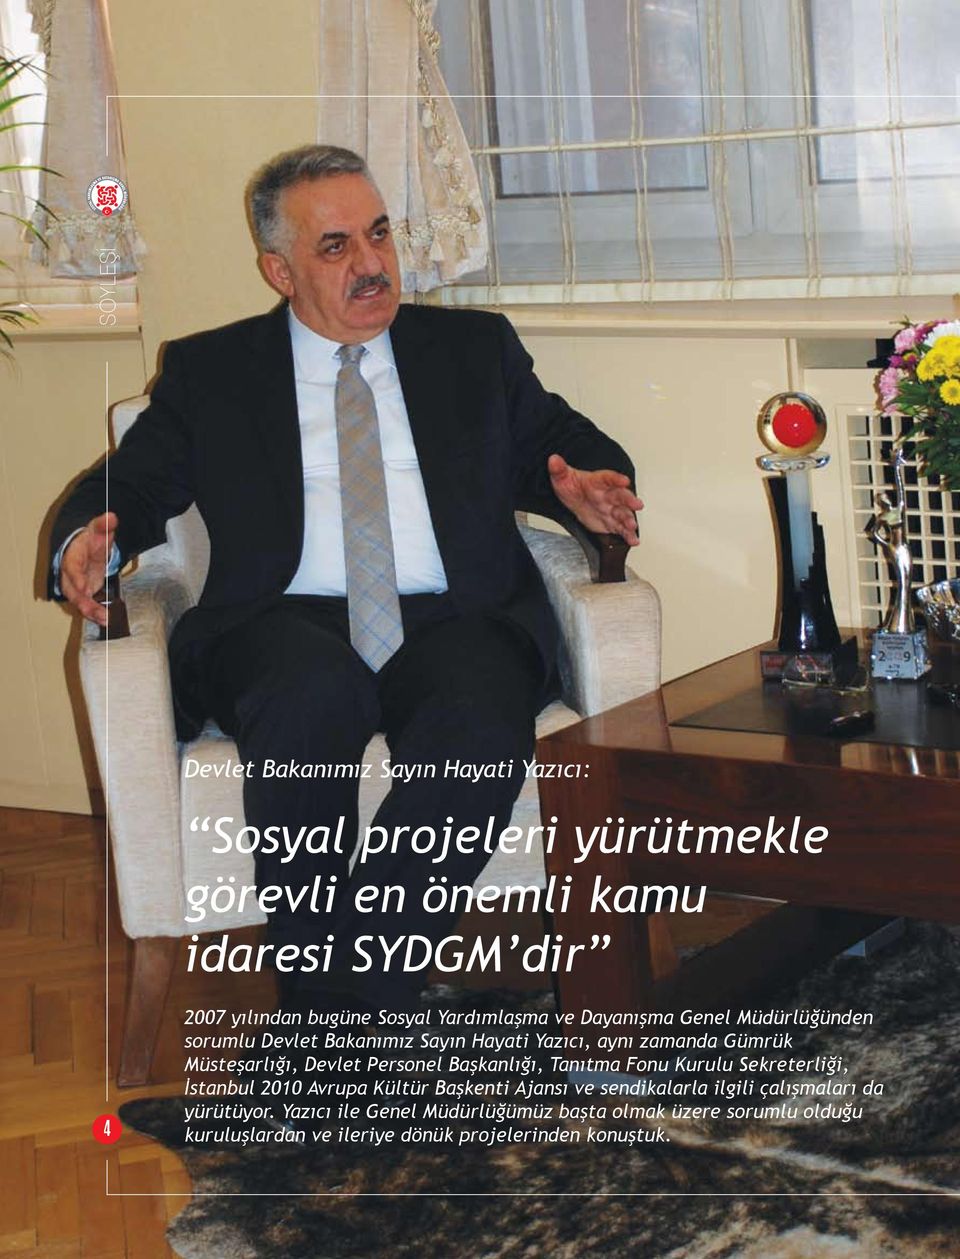 Müsteşarlığı, Devlet Personel Başkanlığı, Tanıtma Fonu Kurulu Sekreterliği, İstanbul 2010 Avrupa Kültür Başkenti Ajansı ve sendikalarla